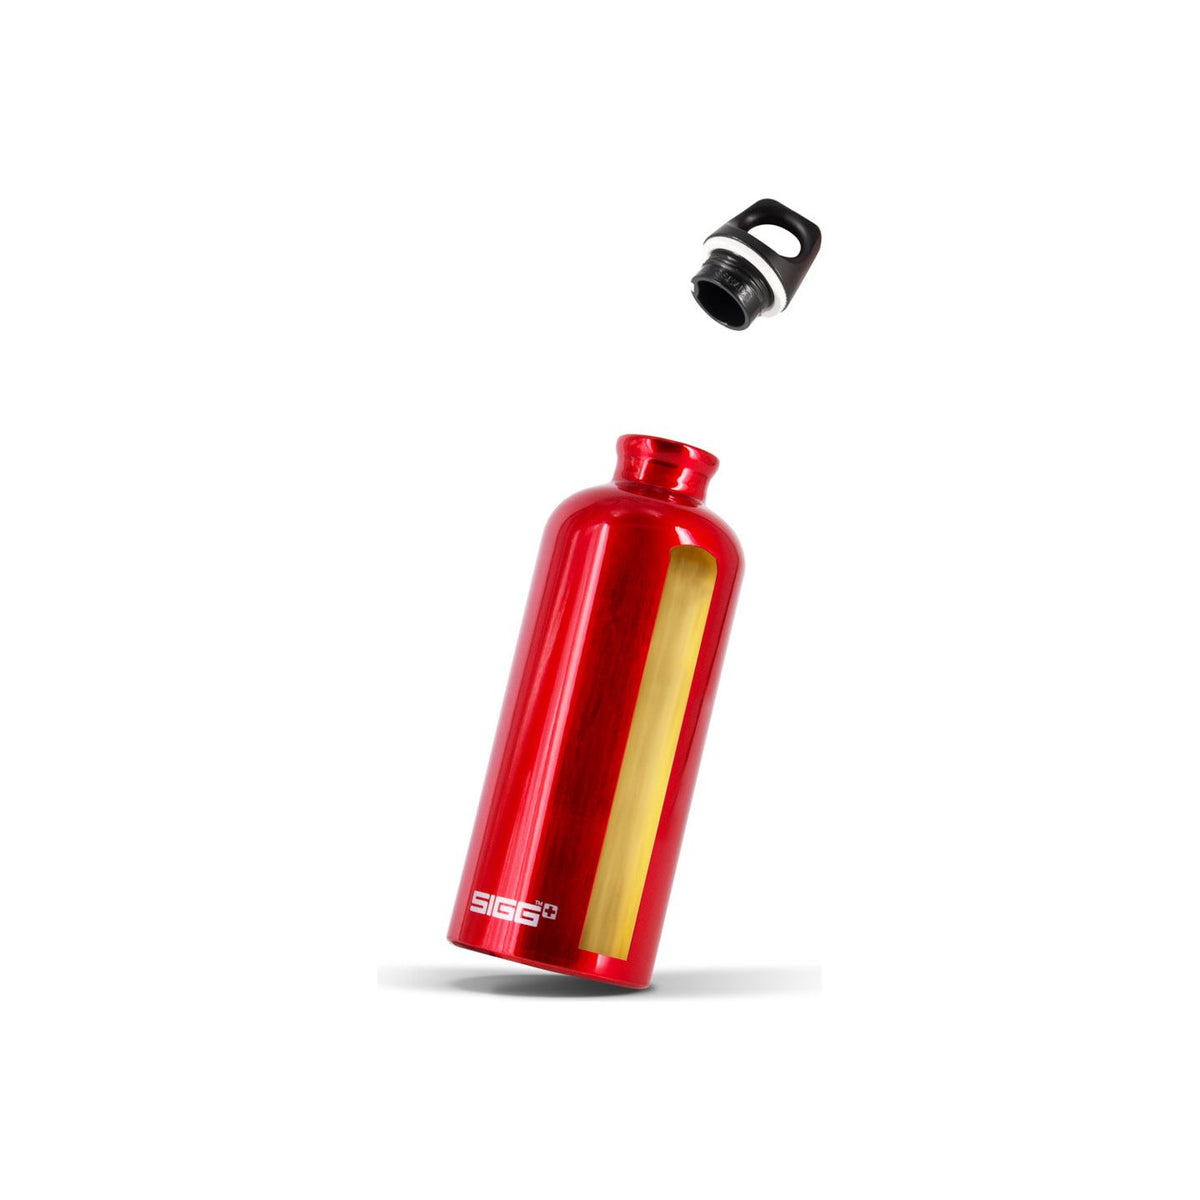 Sigg Traveller 1.0L Water Bottle - Red